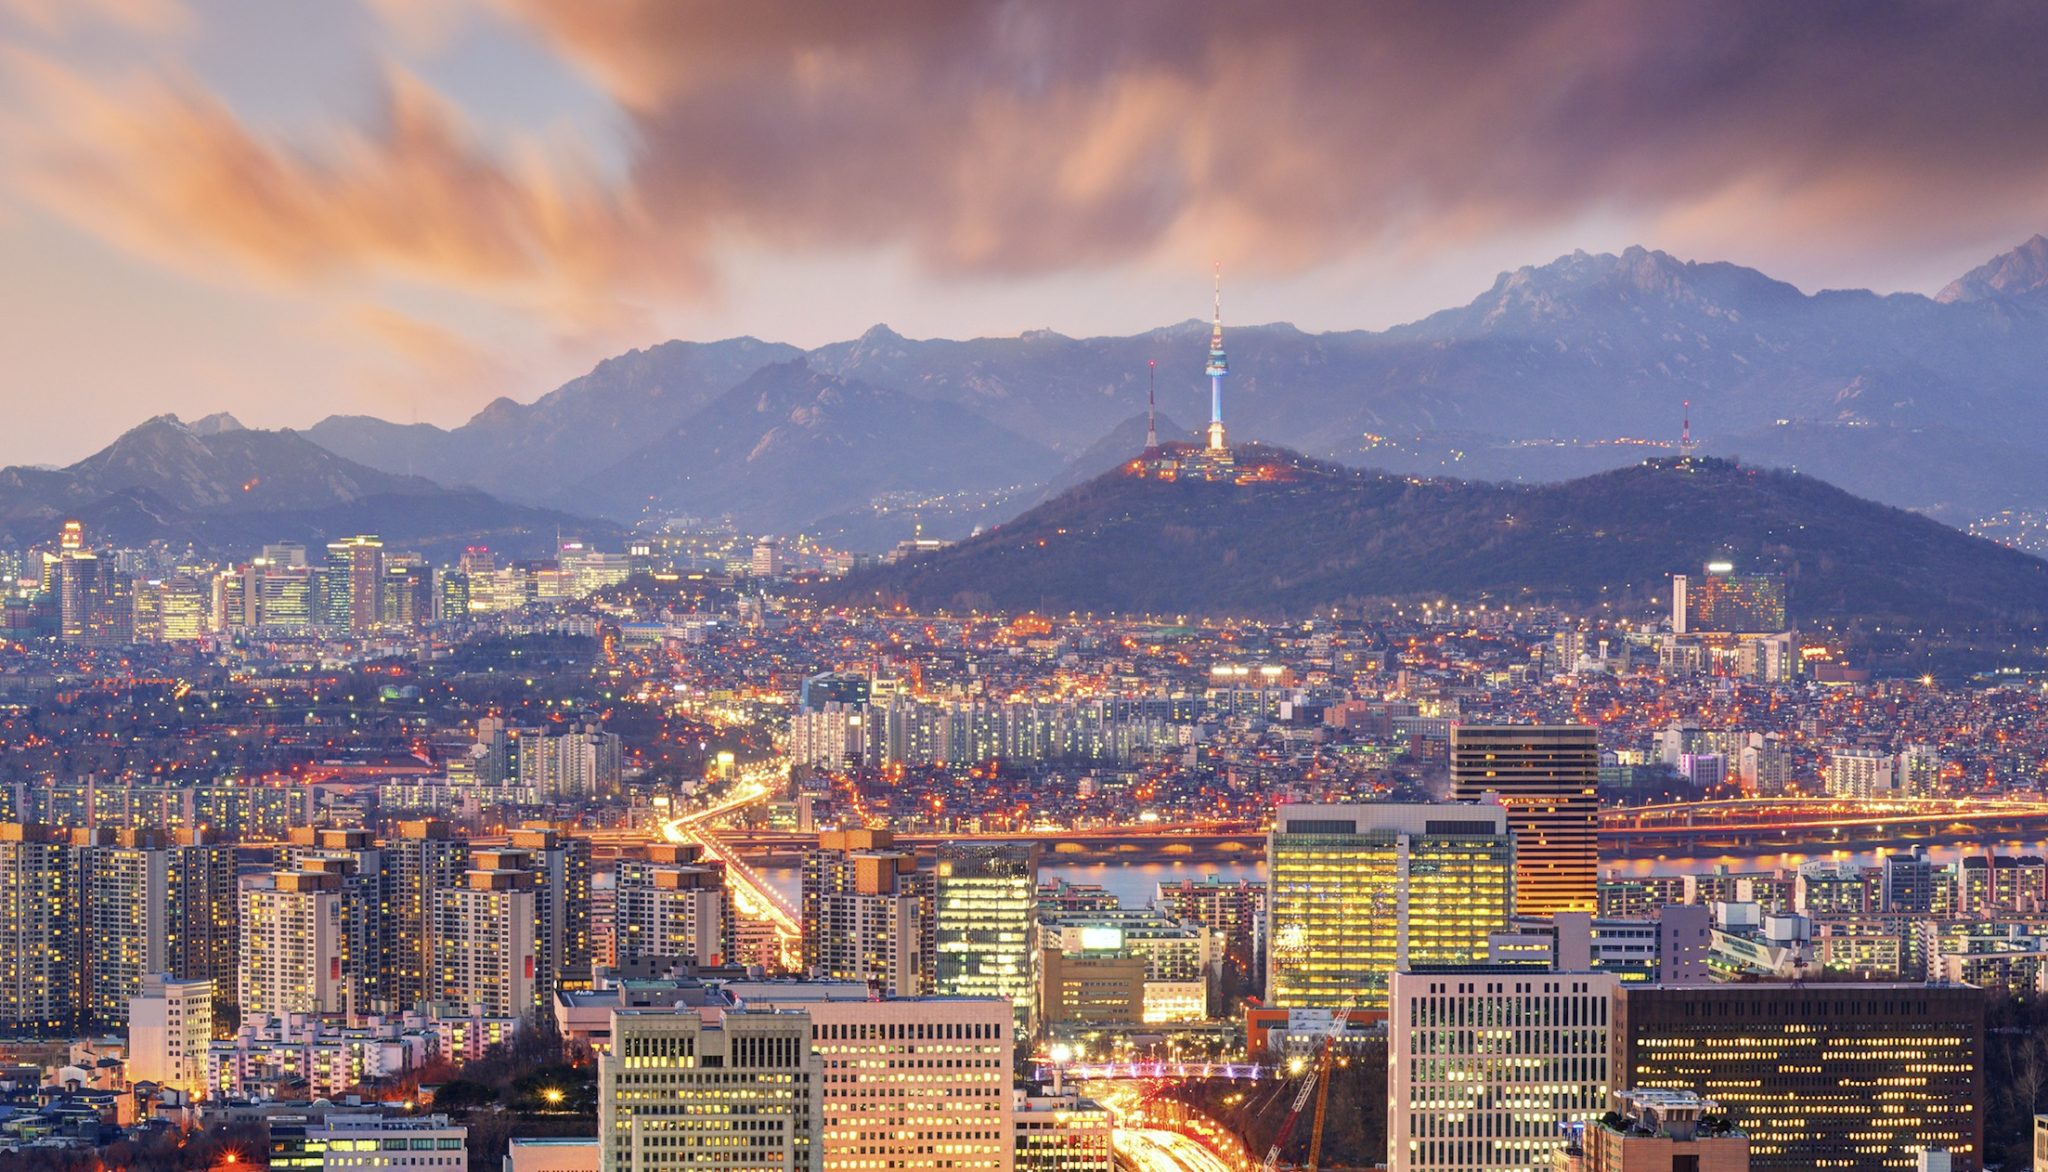 Seoul: The Next Mega Blockchain Tech Hub